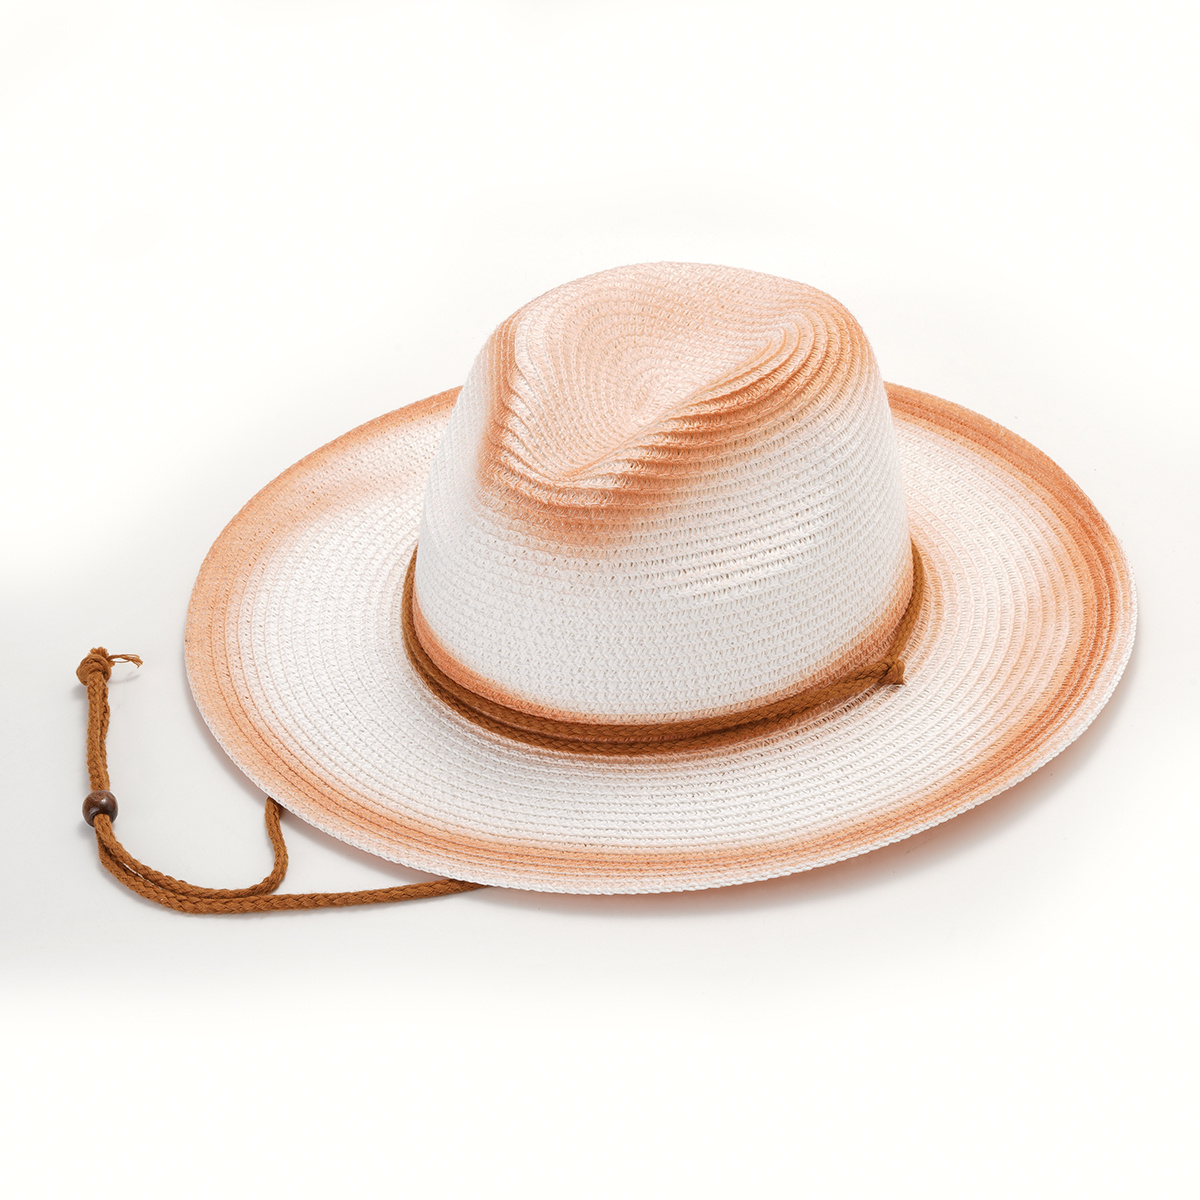 Wine Elegant Sun Protection Hat, Men's Small Brim Panama Hat for Men,Mens Hats and Caps,Temu